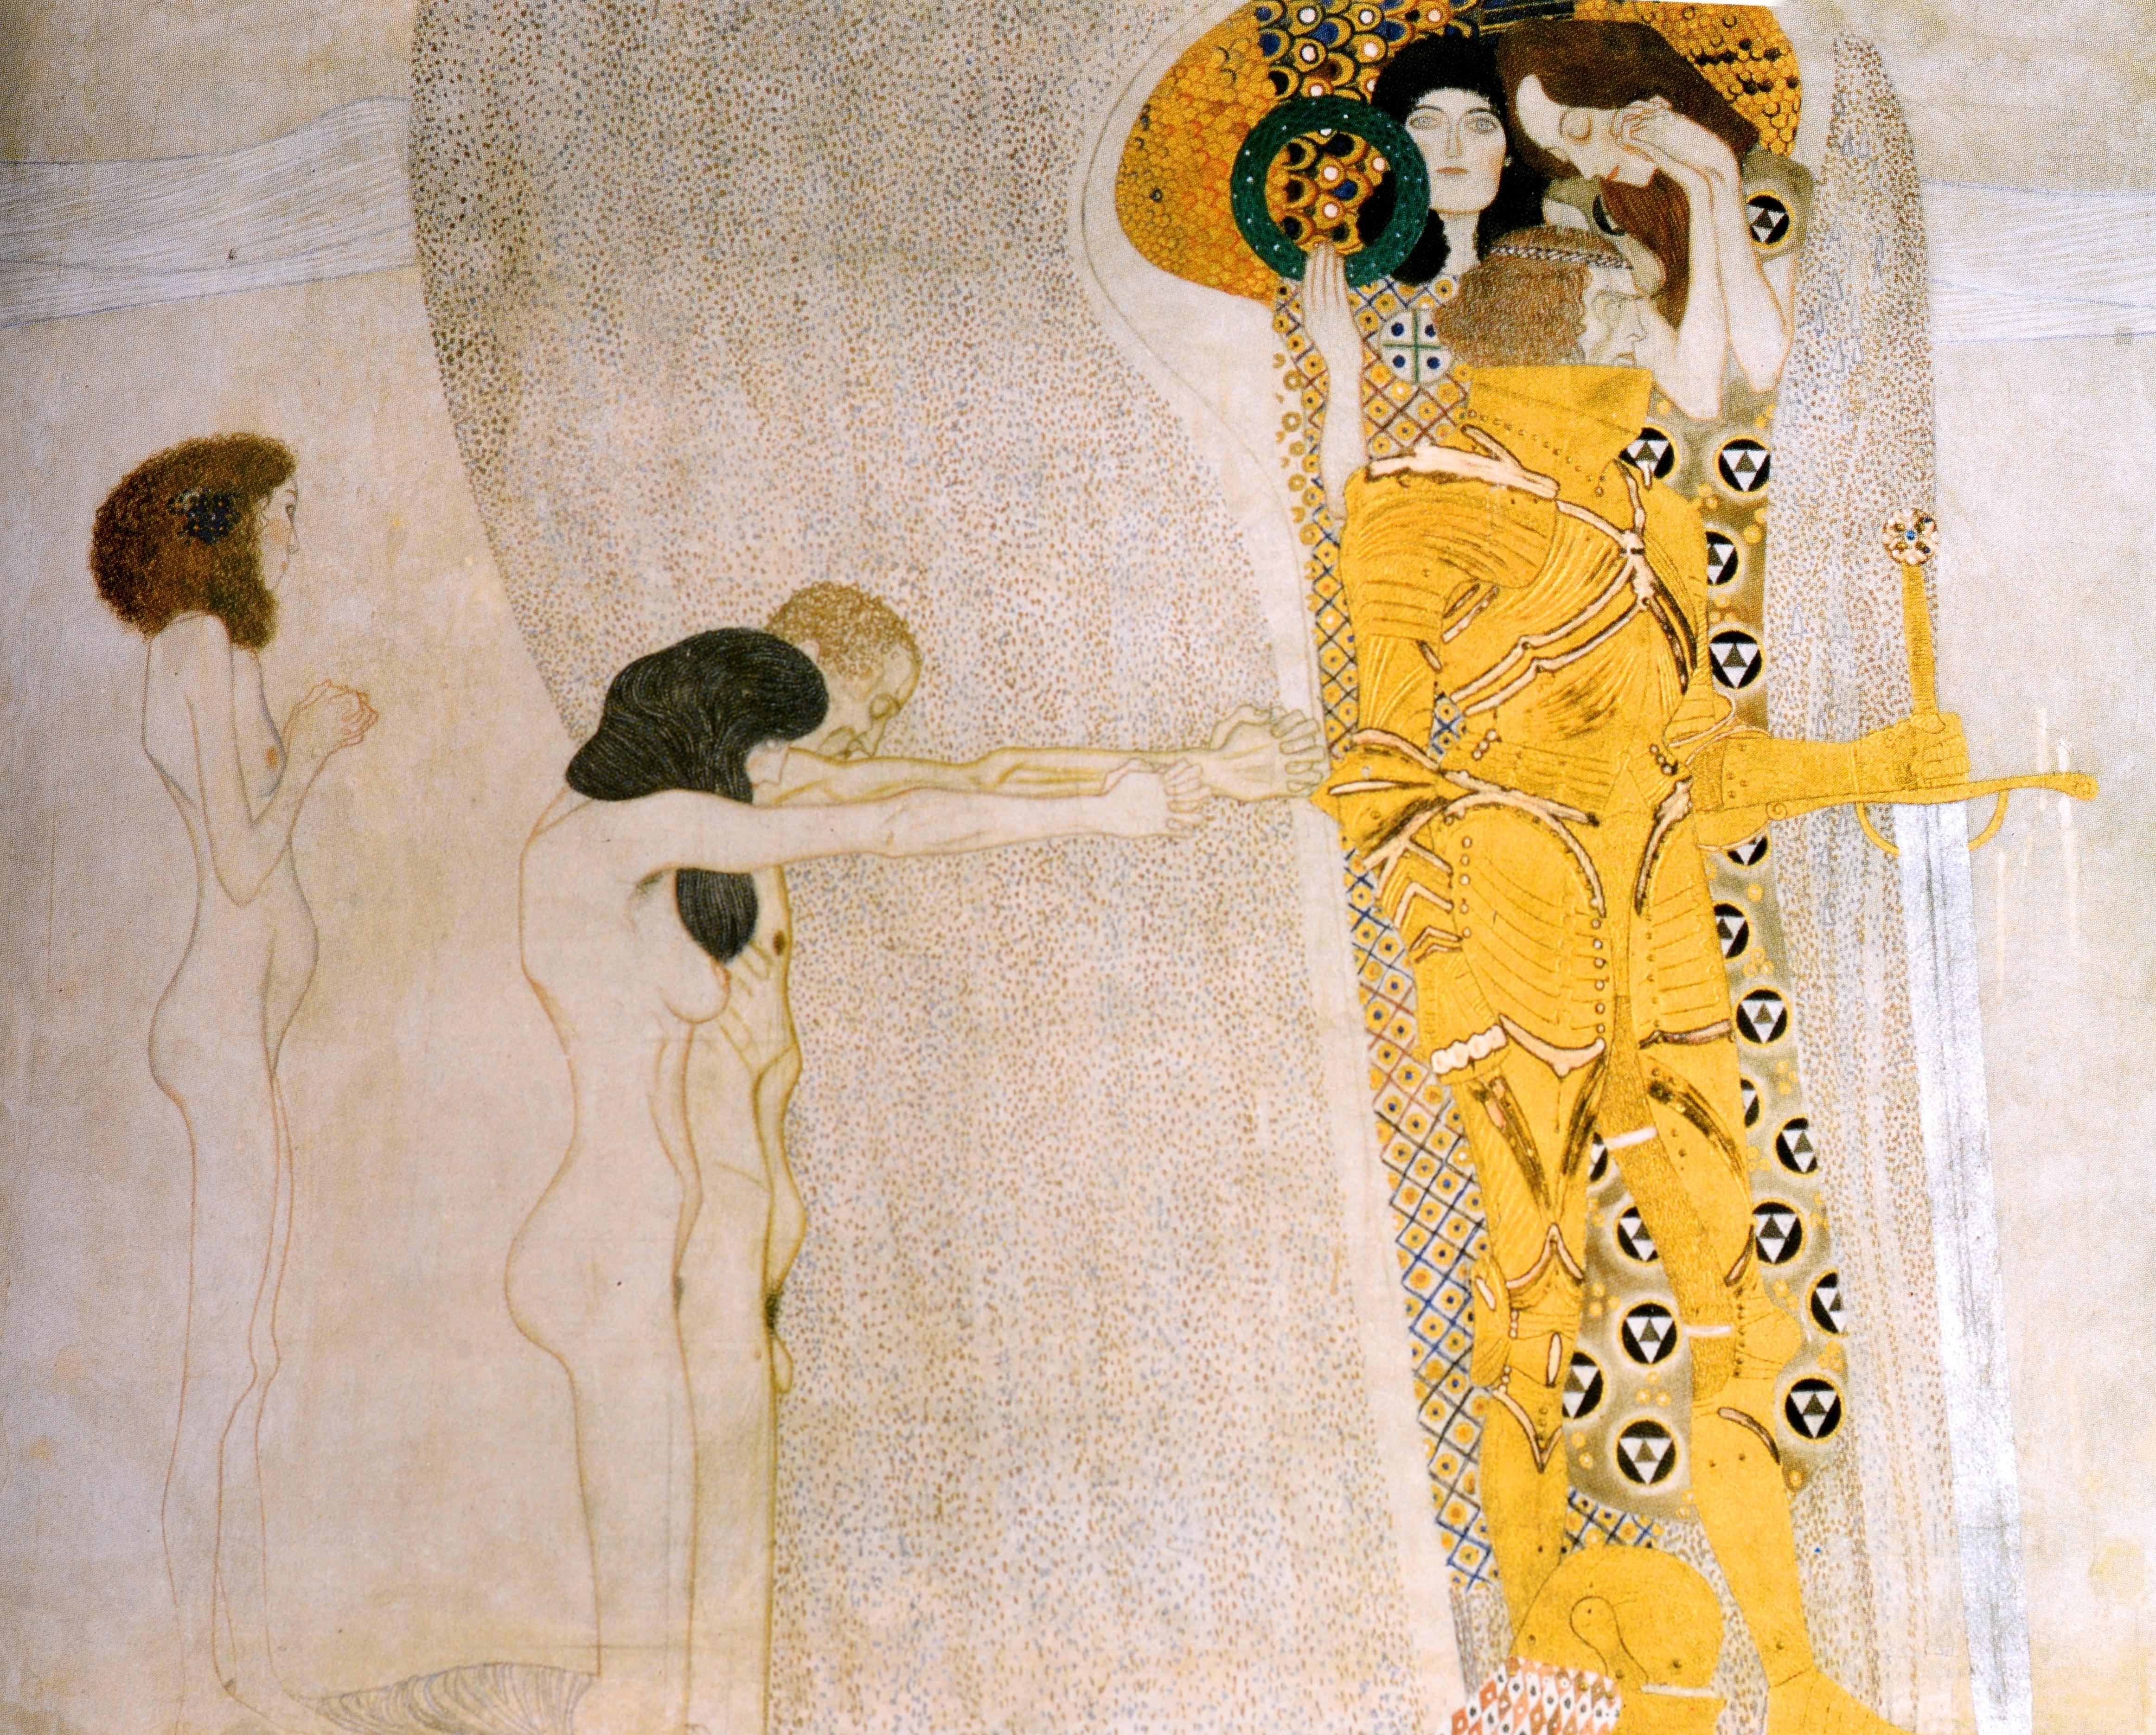 L'art de Vienne 1898-1918 Klimt, Kokoschka, Schiele et leurs contemporains en vente 1